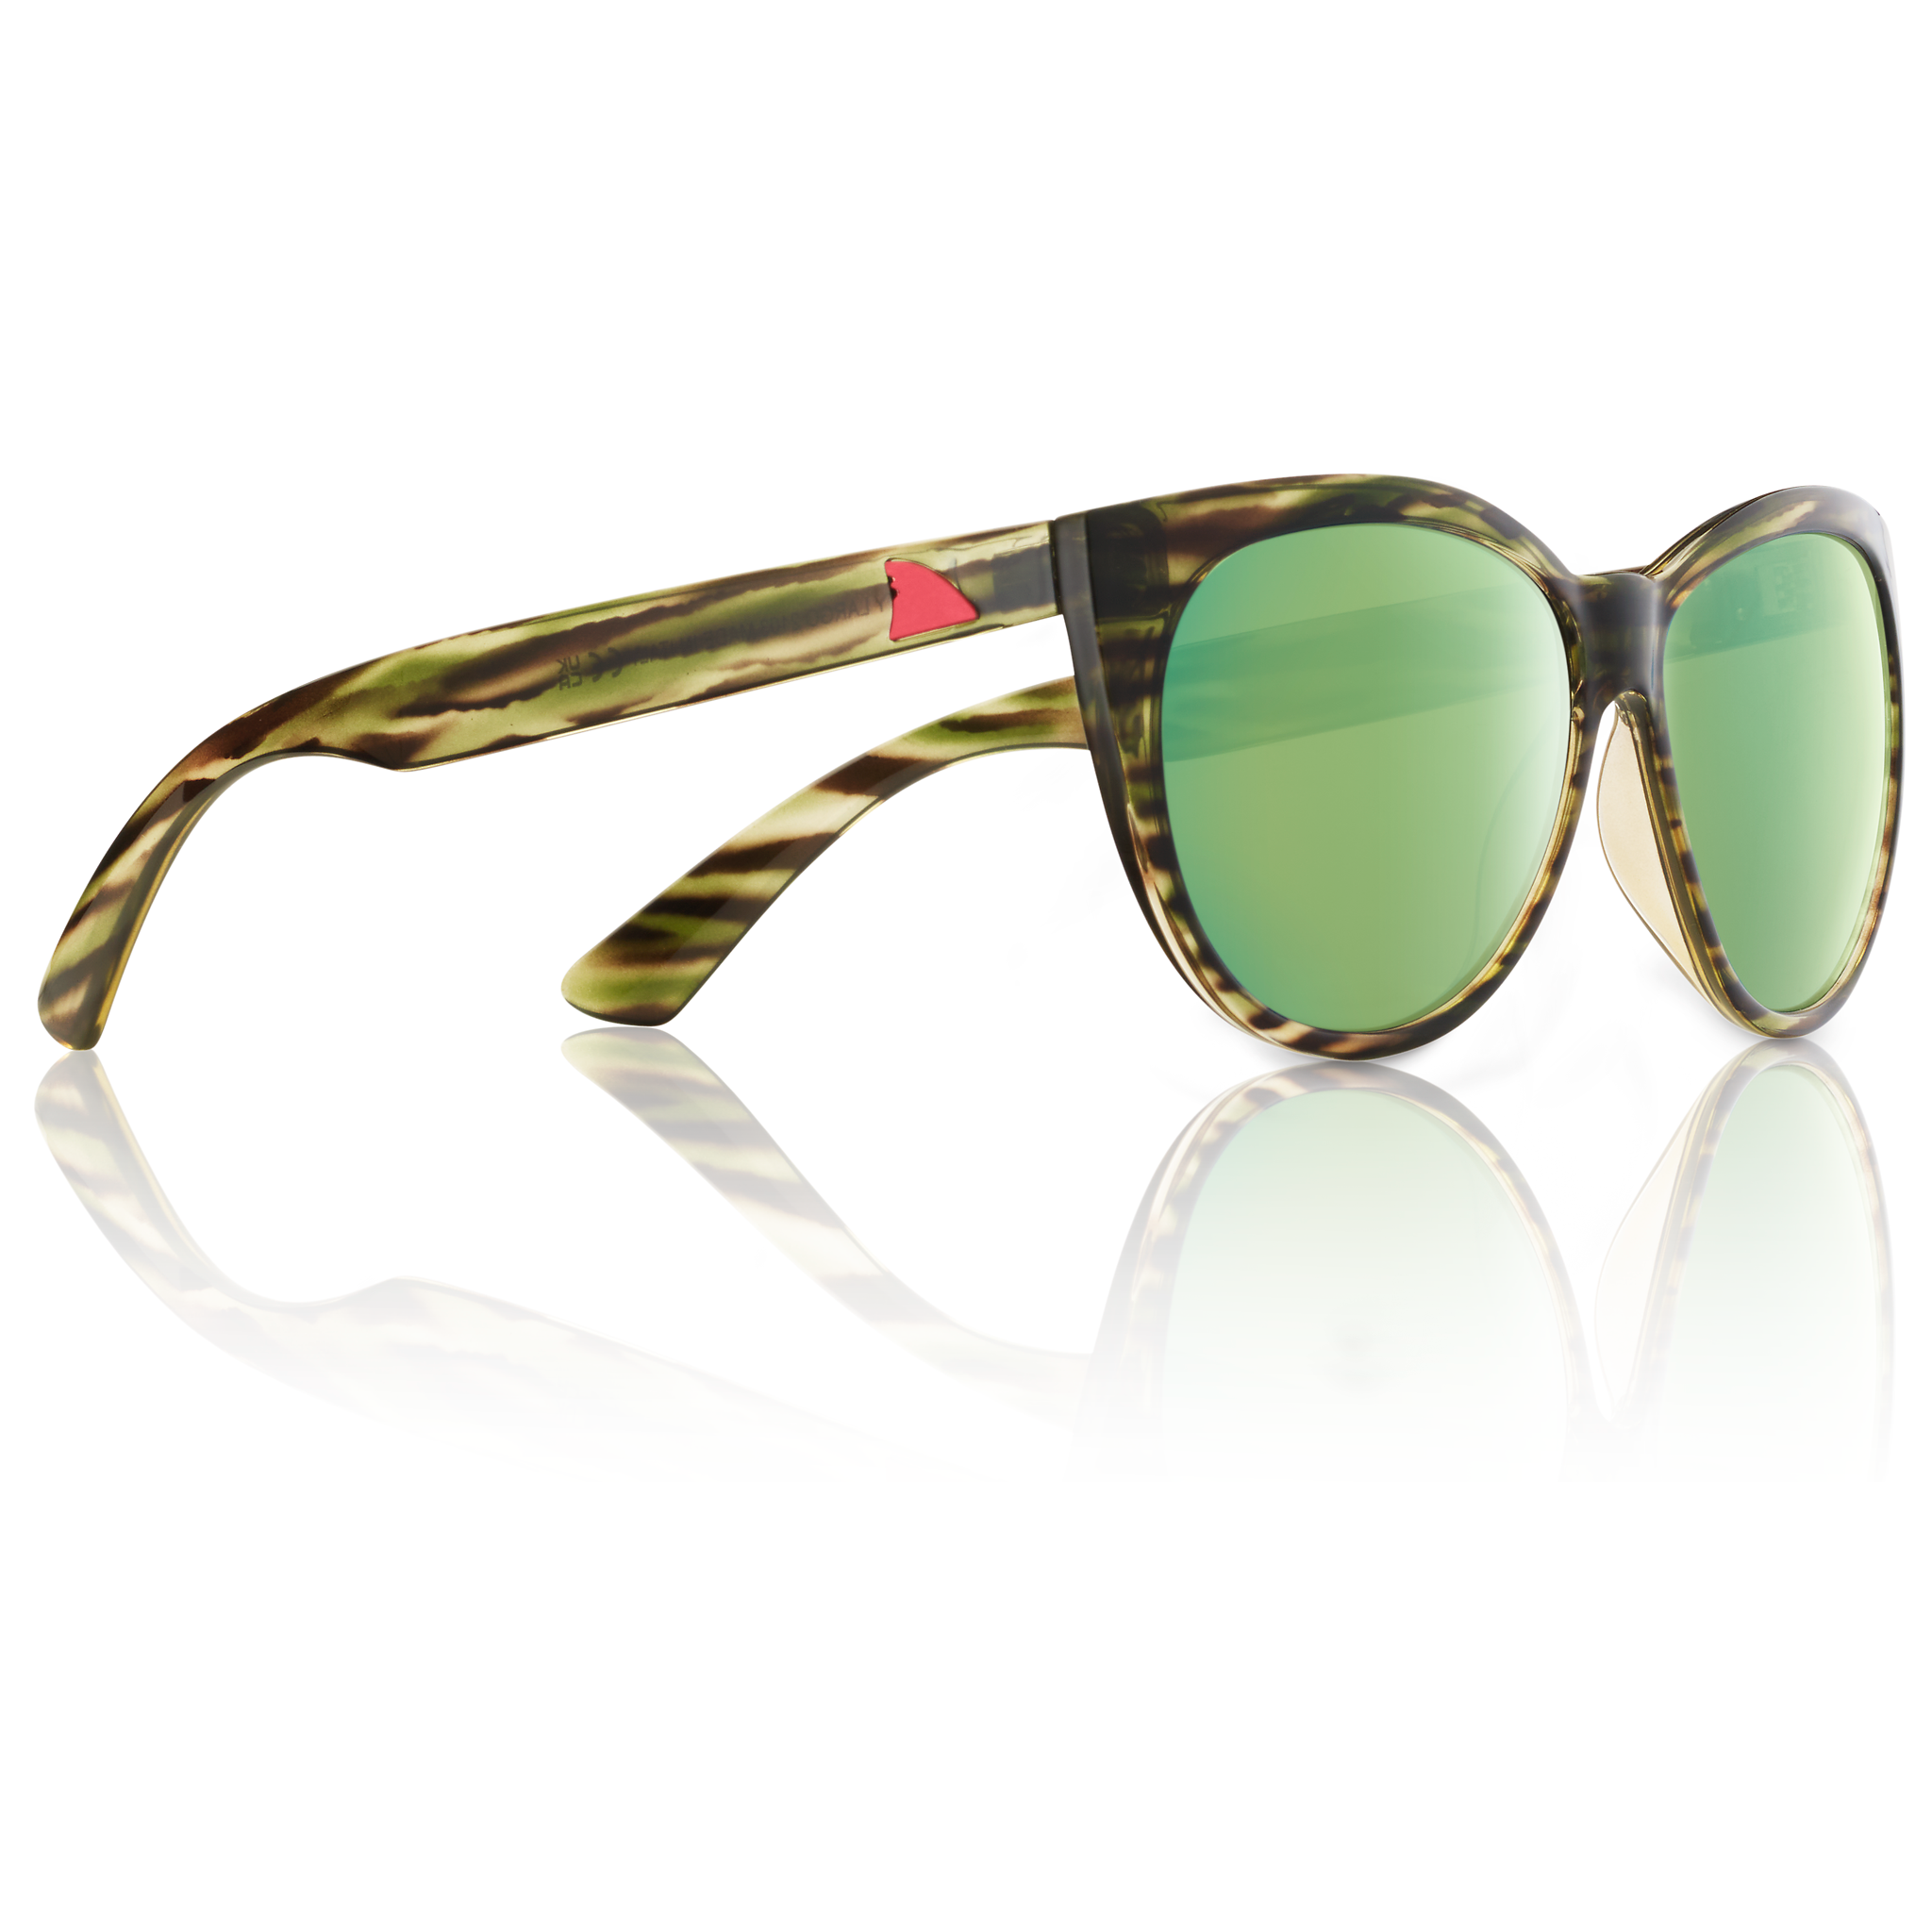 Key Largo Polarized Sunglasses By Redfin 393